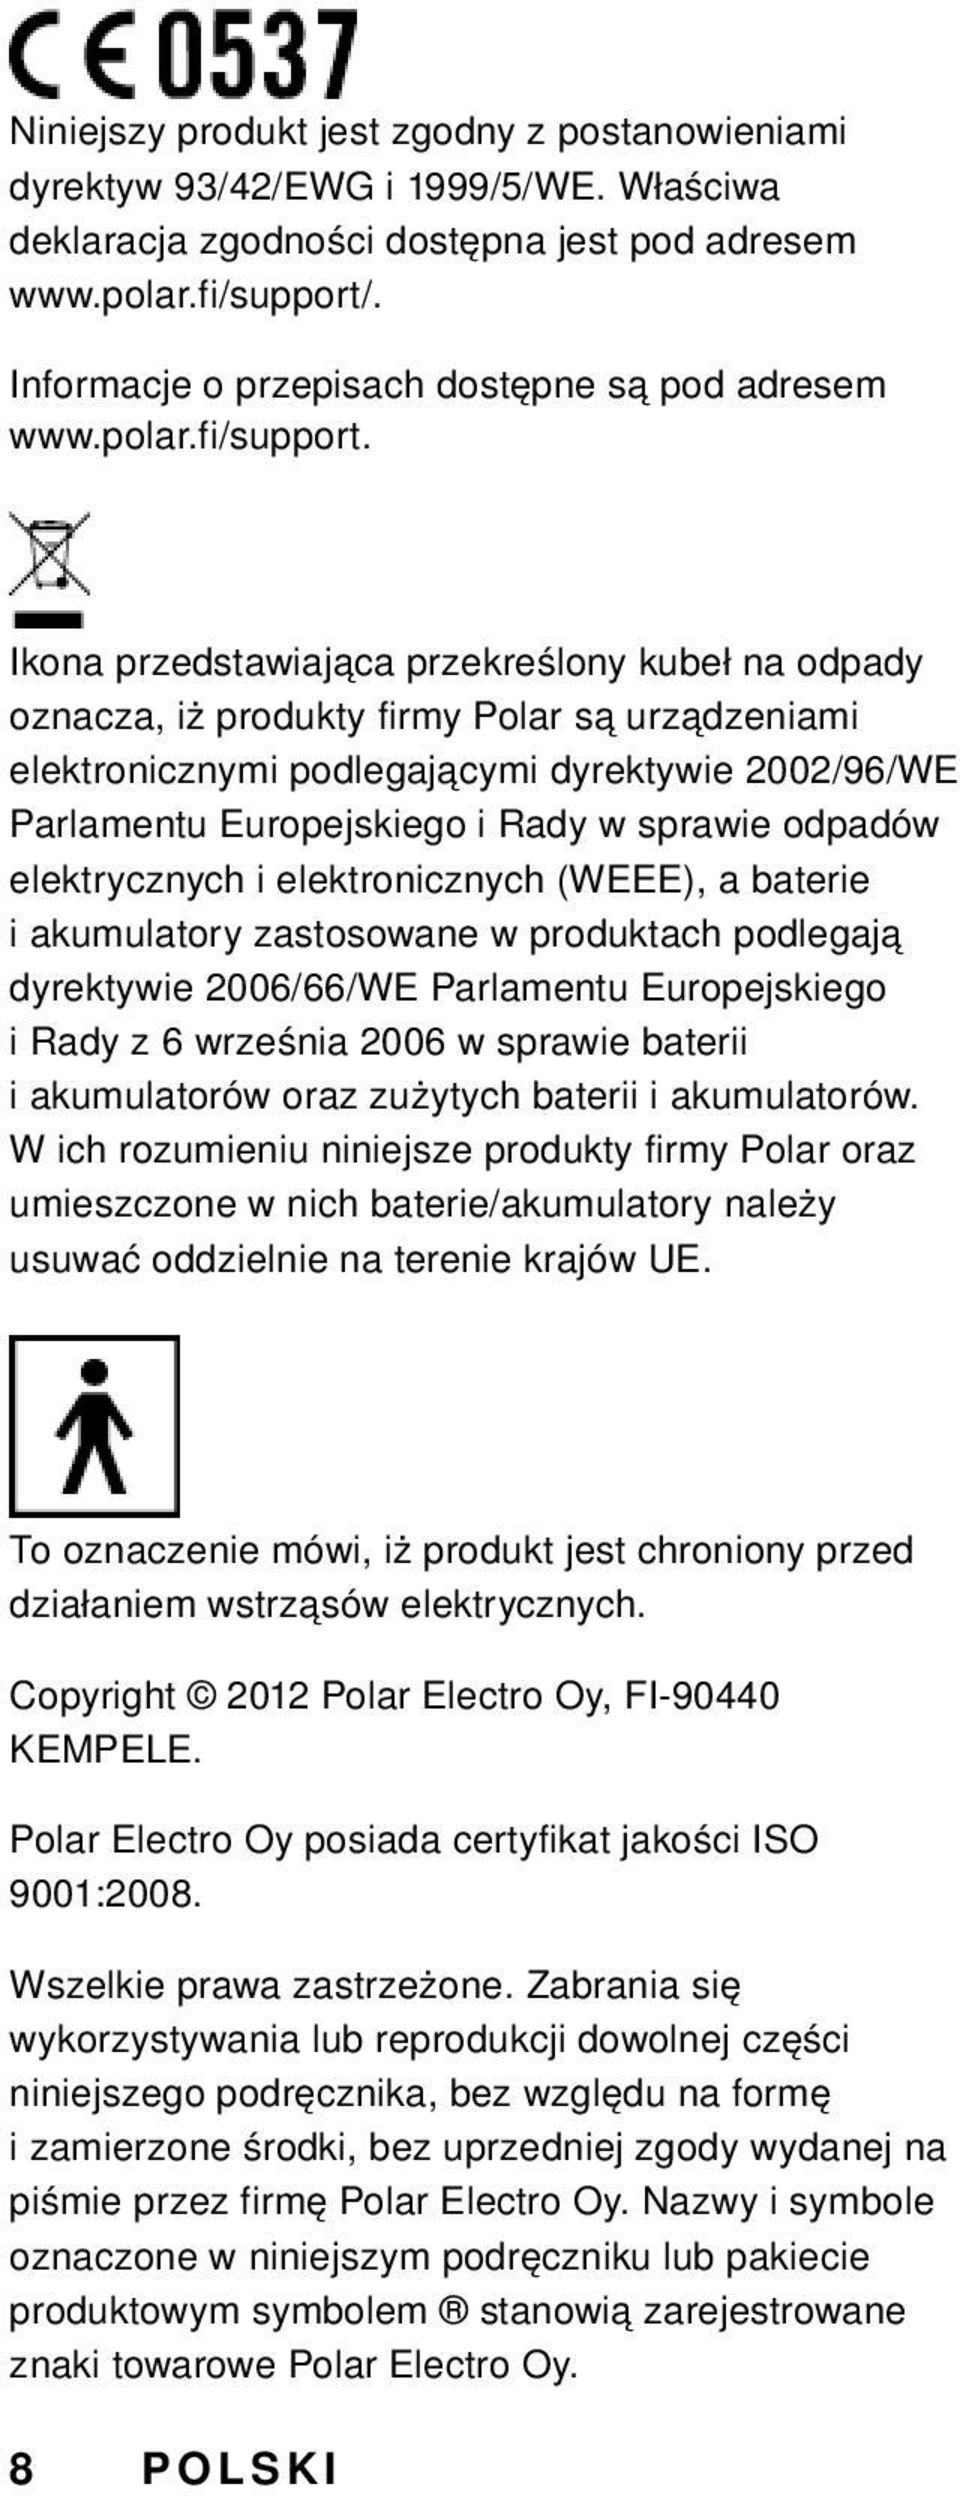 Ikona przedstawiająca przekreślony kubeł na odpady oznacza, iż produkty firmy Polar są urządzeniami elektronicznymi podlegającymi dyrektywie 2002/96/WE Parlamentu Europejskiego i Rady w sprawie